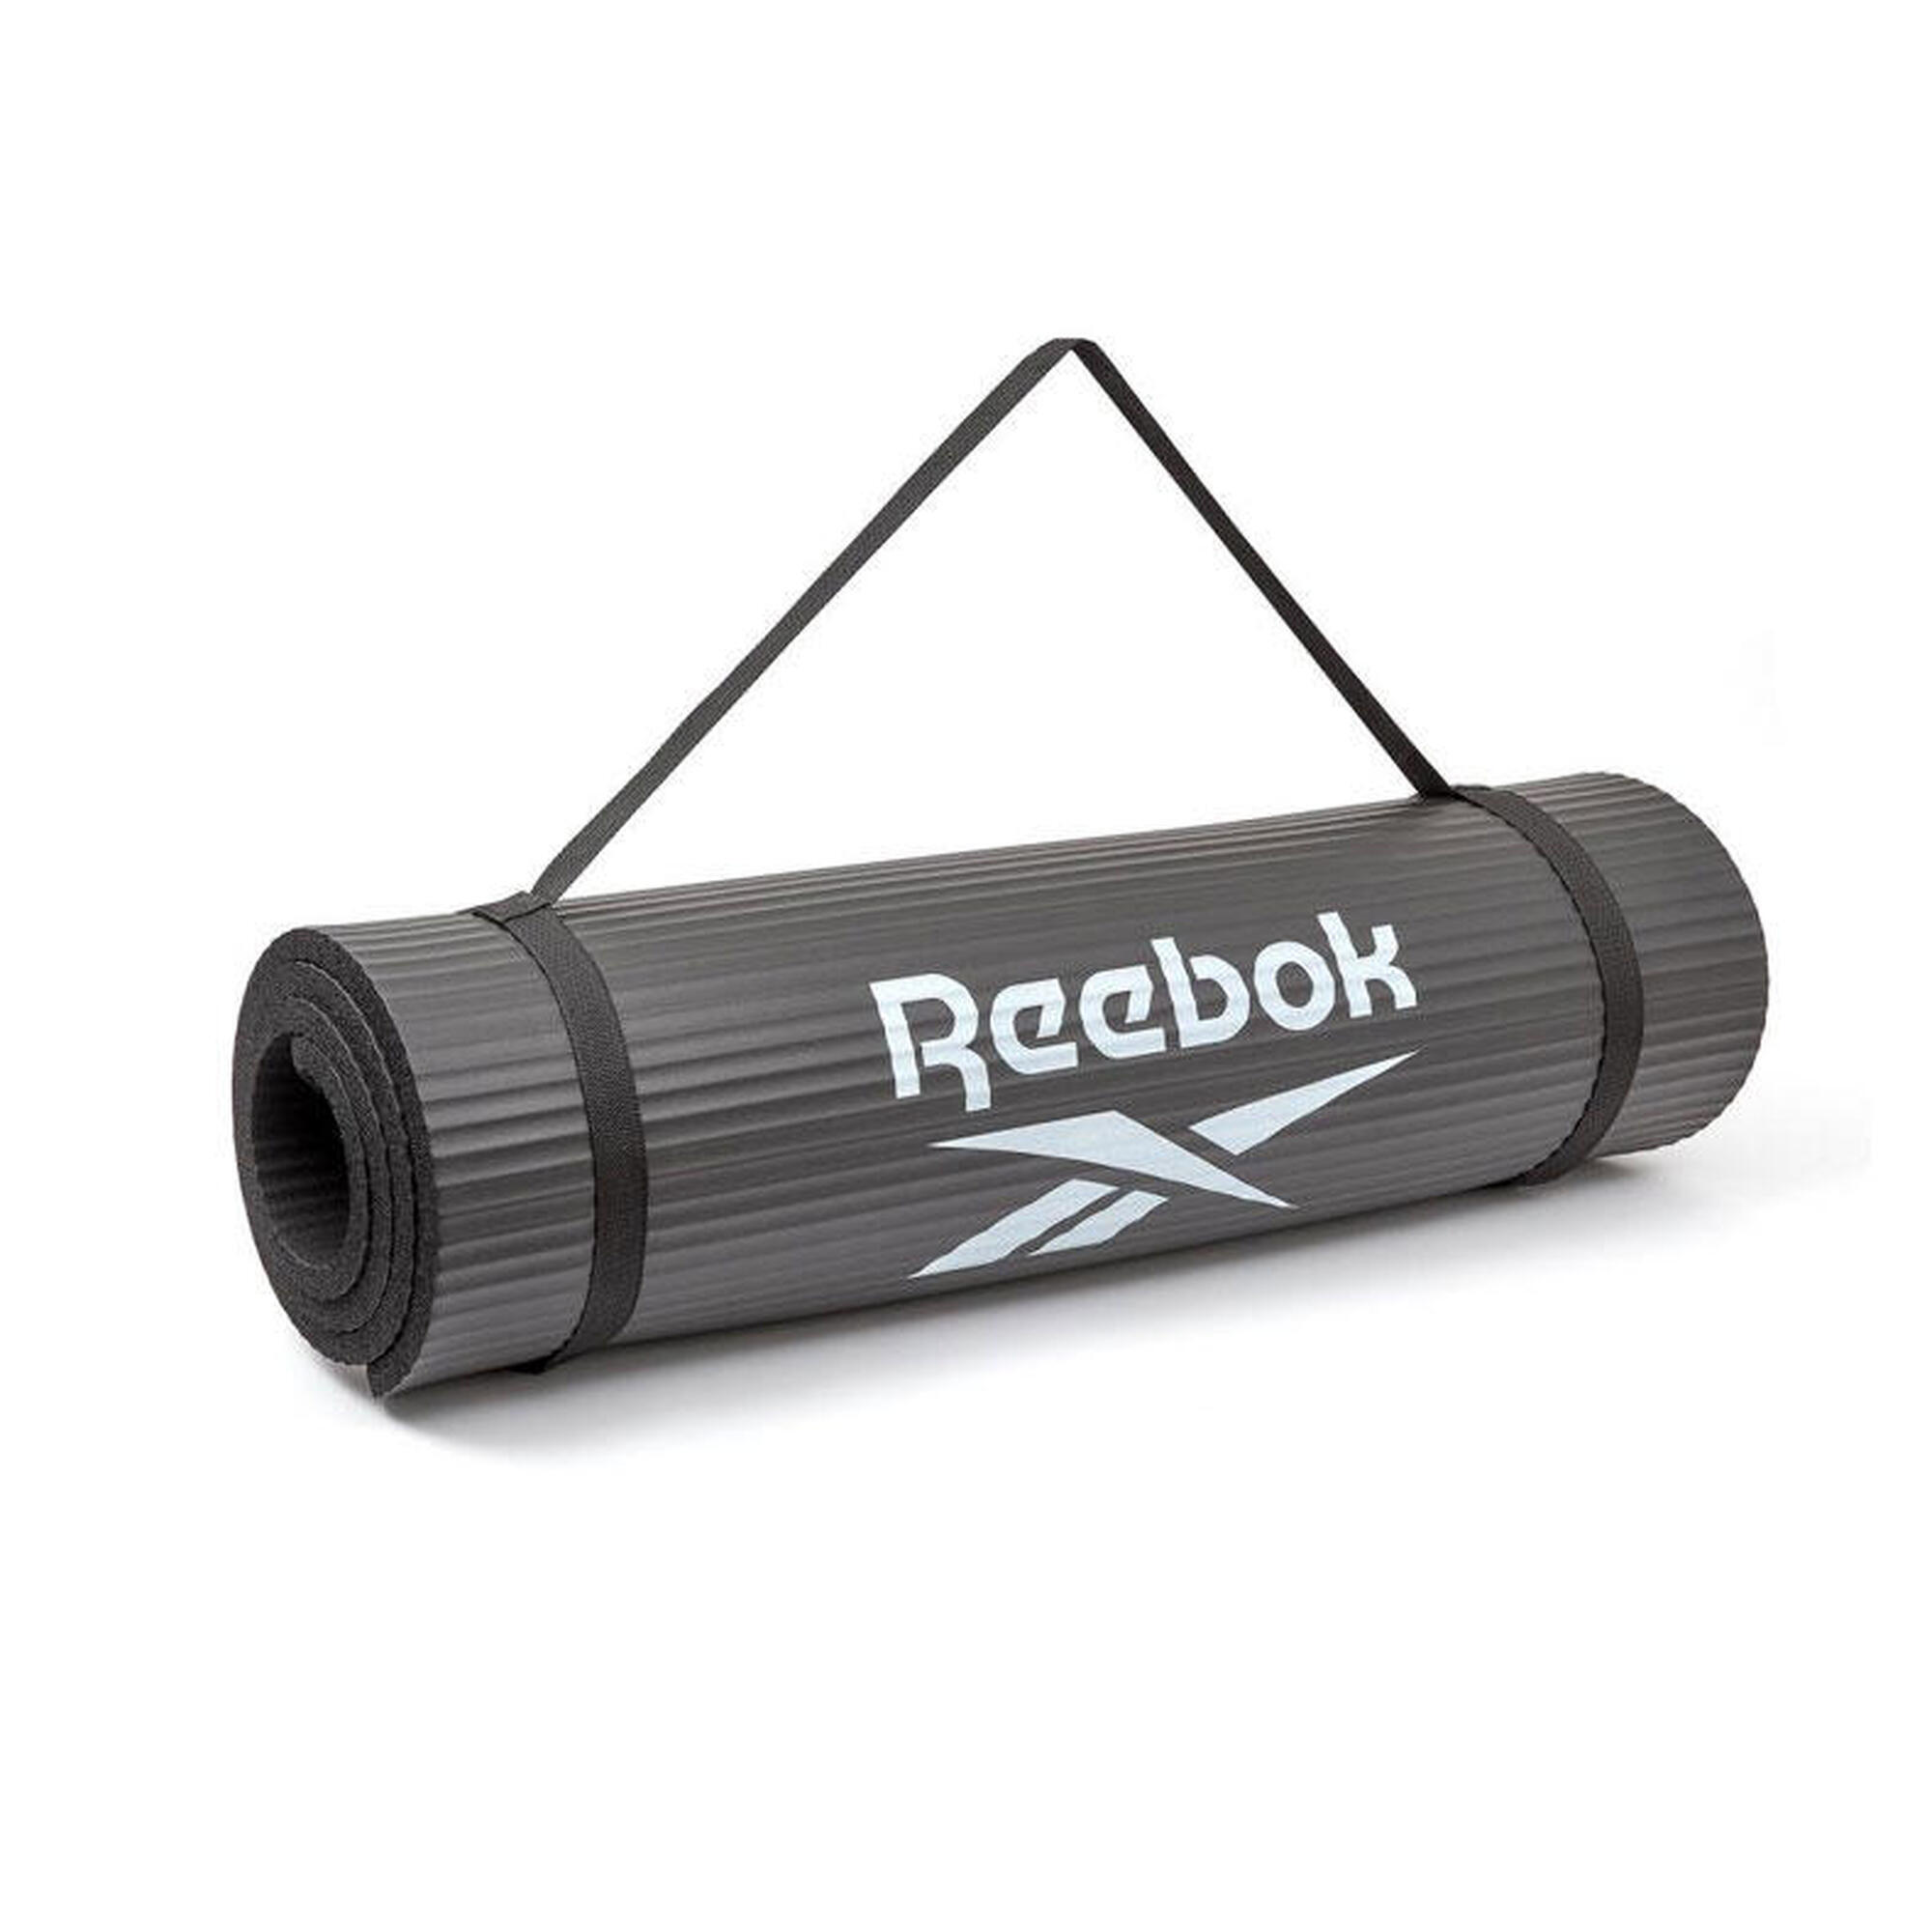 Tapis de Training Reebok - 15mm - Noir